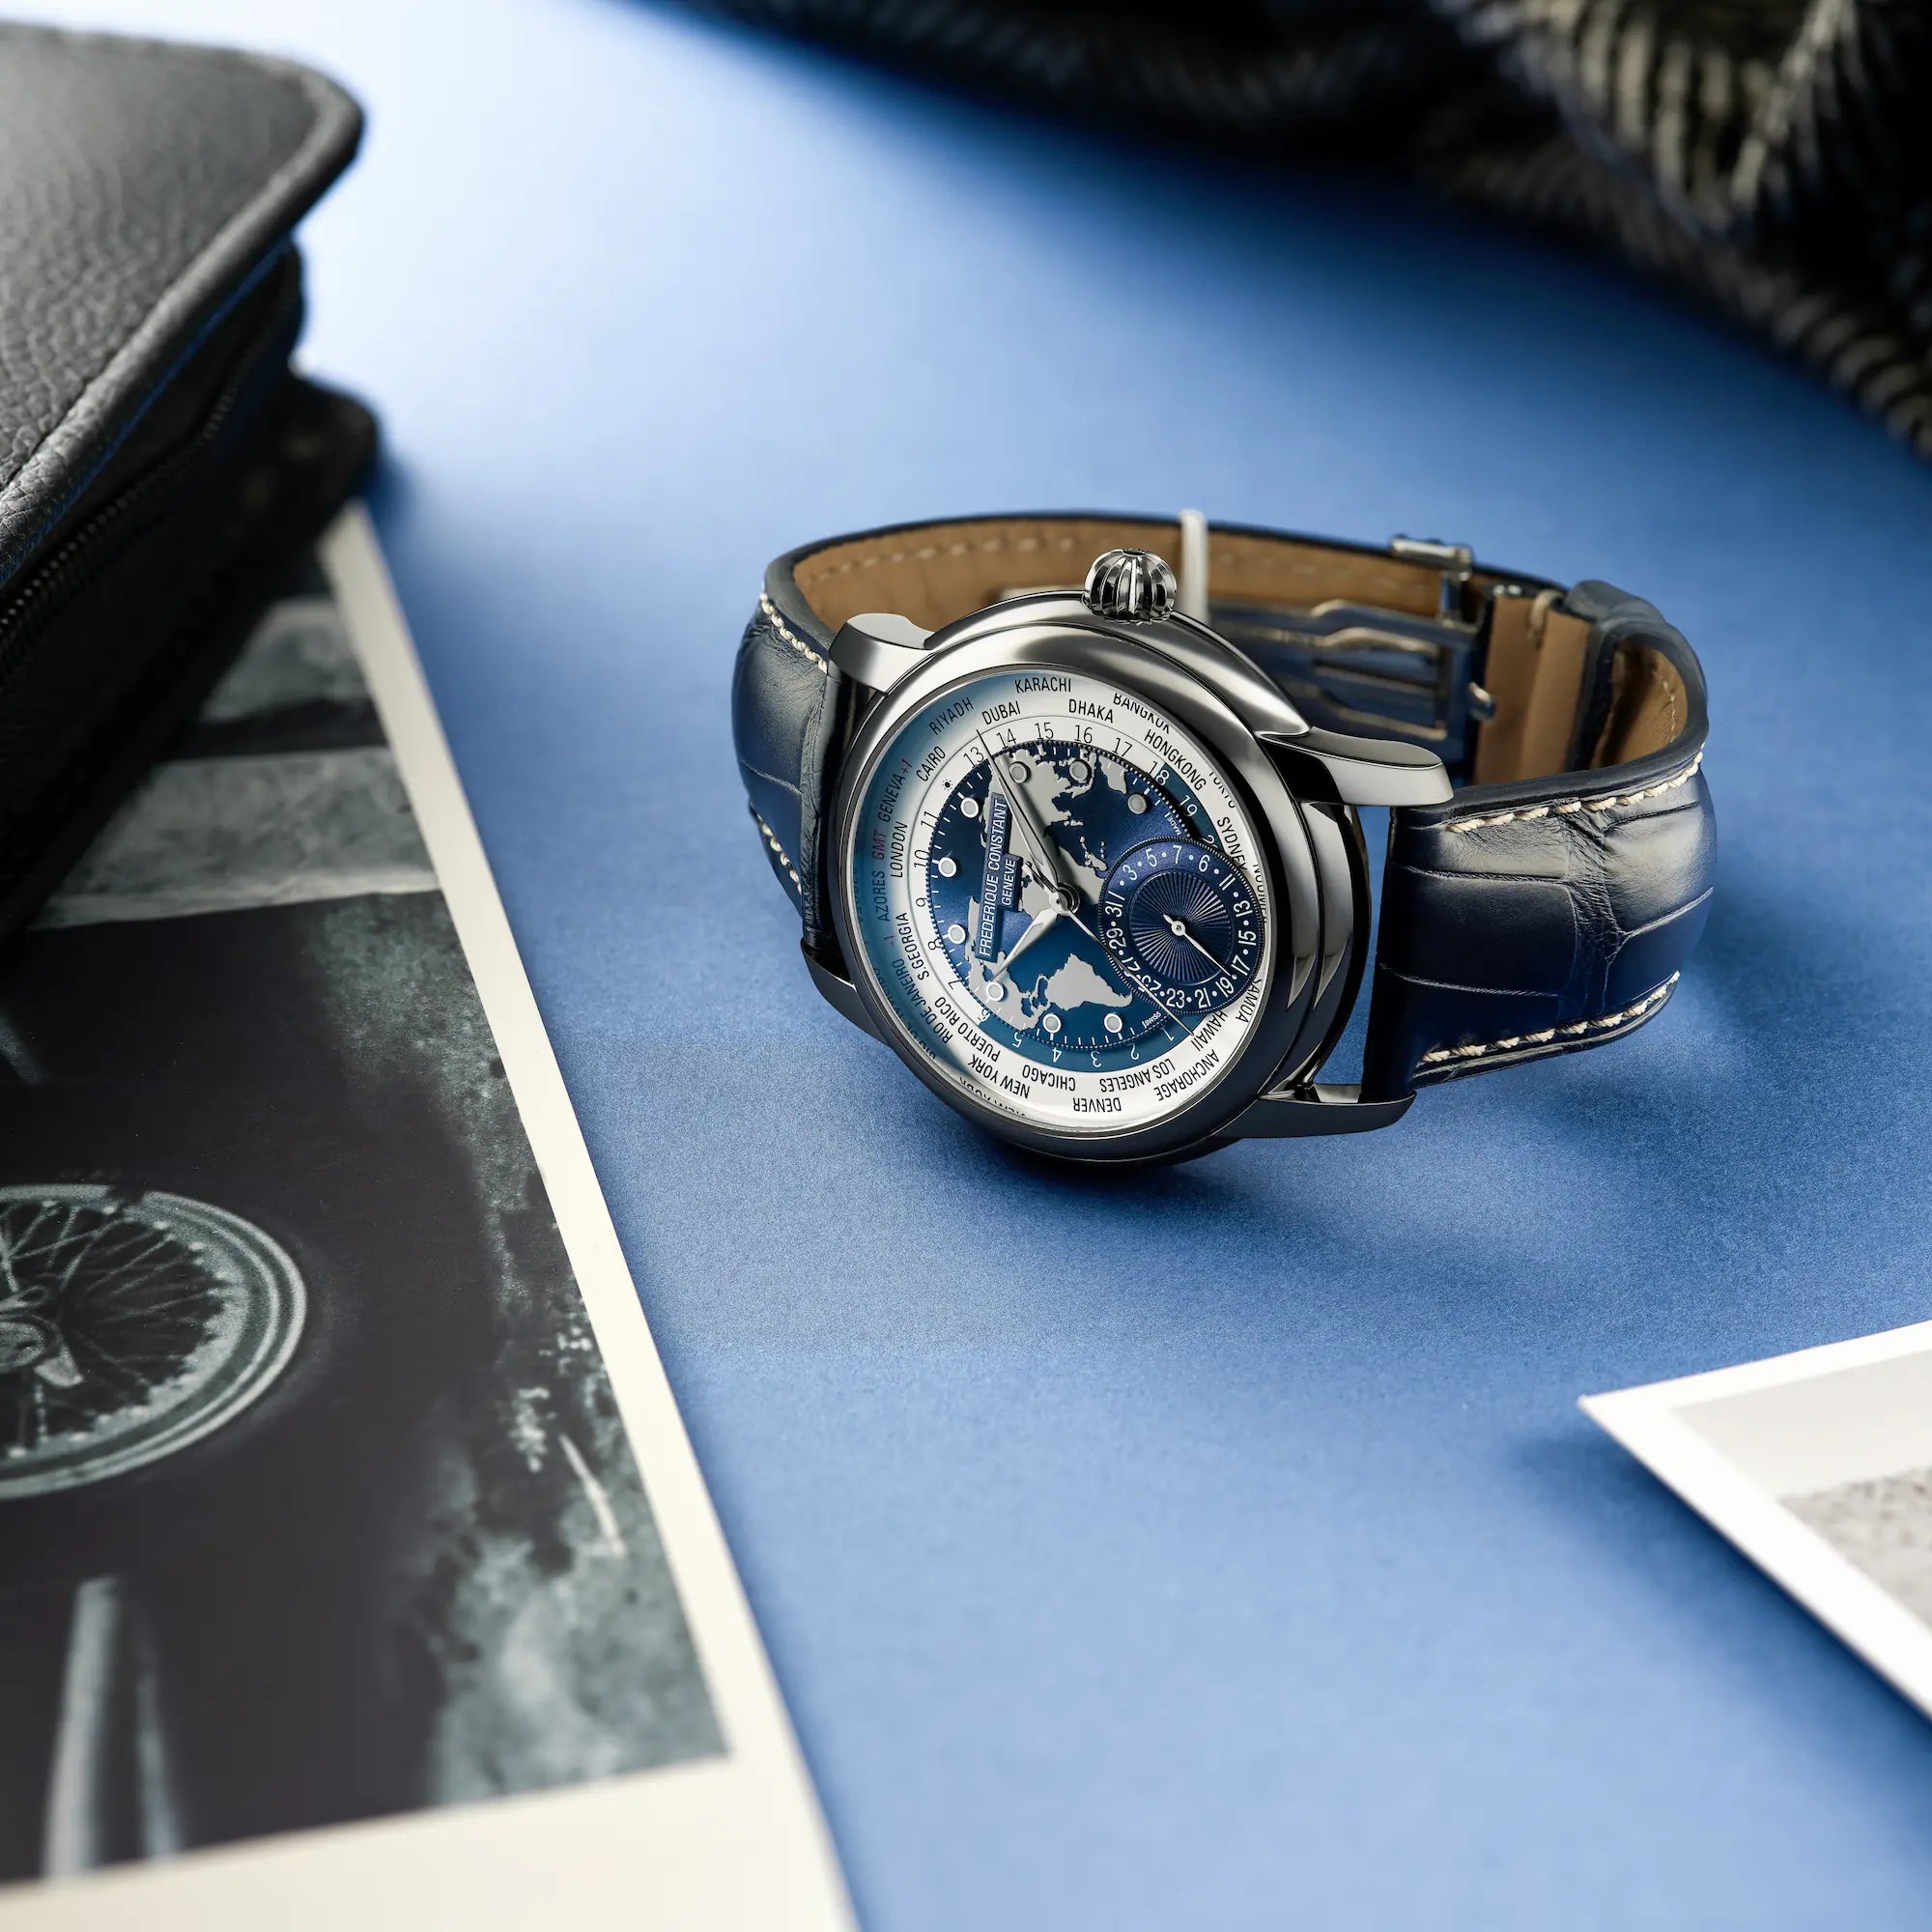 Produktfotografie des limitierten Classic Manufacture Worldtimers von Fredeique Constant mit dem weiß-blauen Weltkarten-Zifferblatt am dunkelblauen Lederband